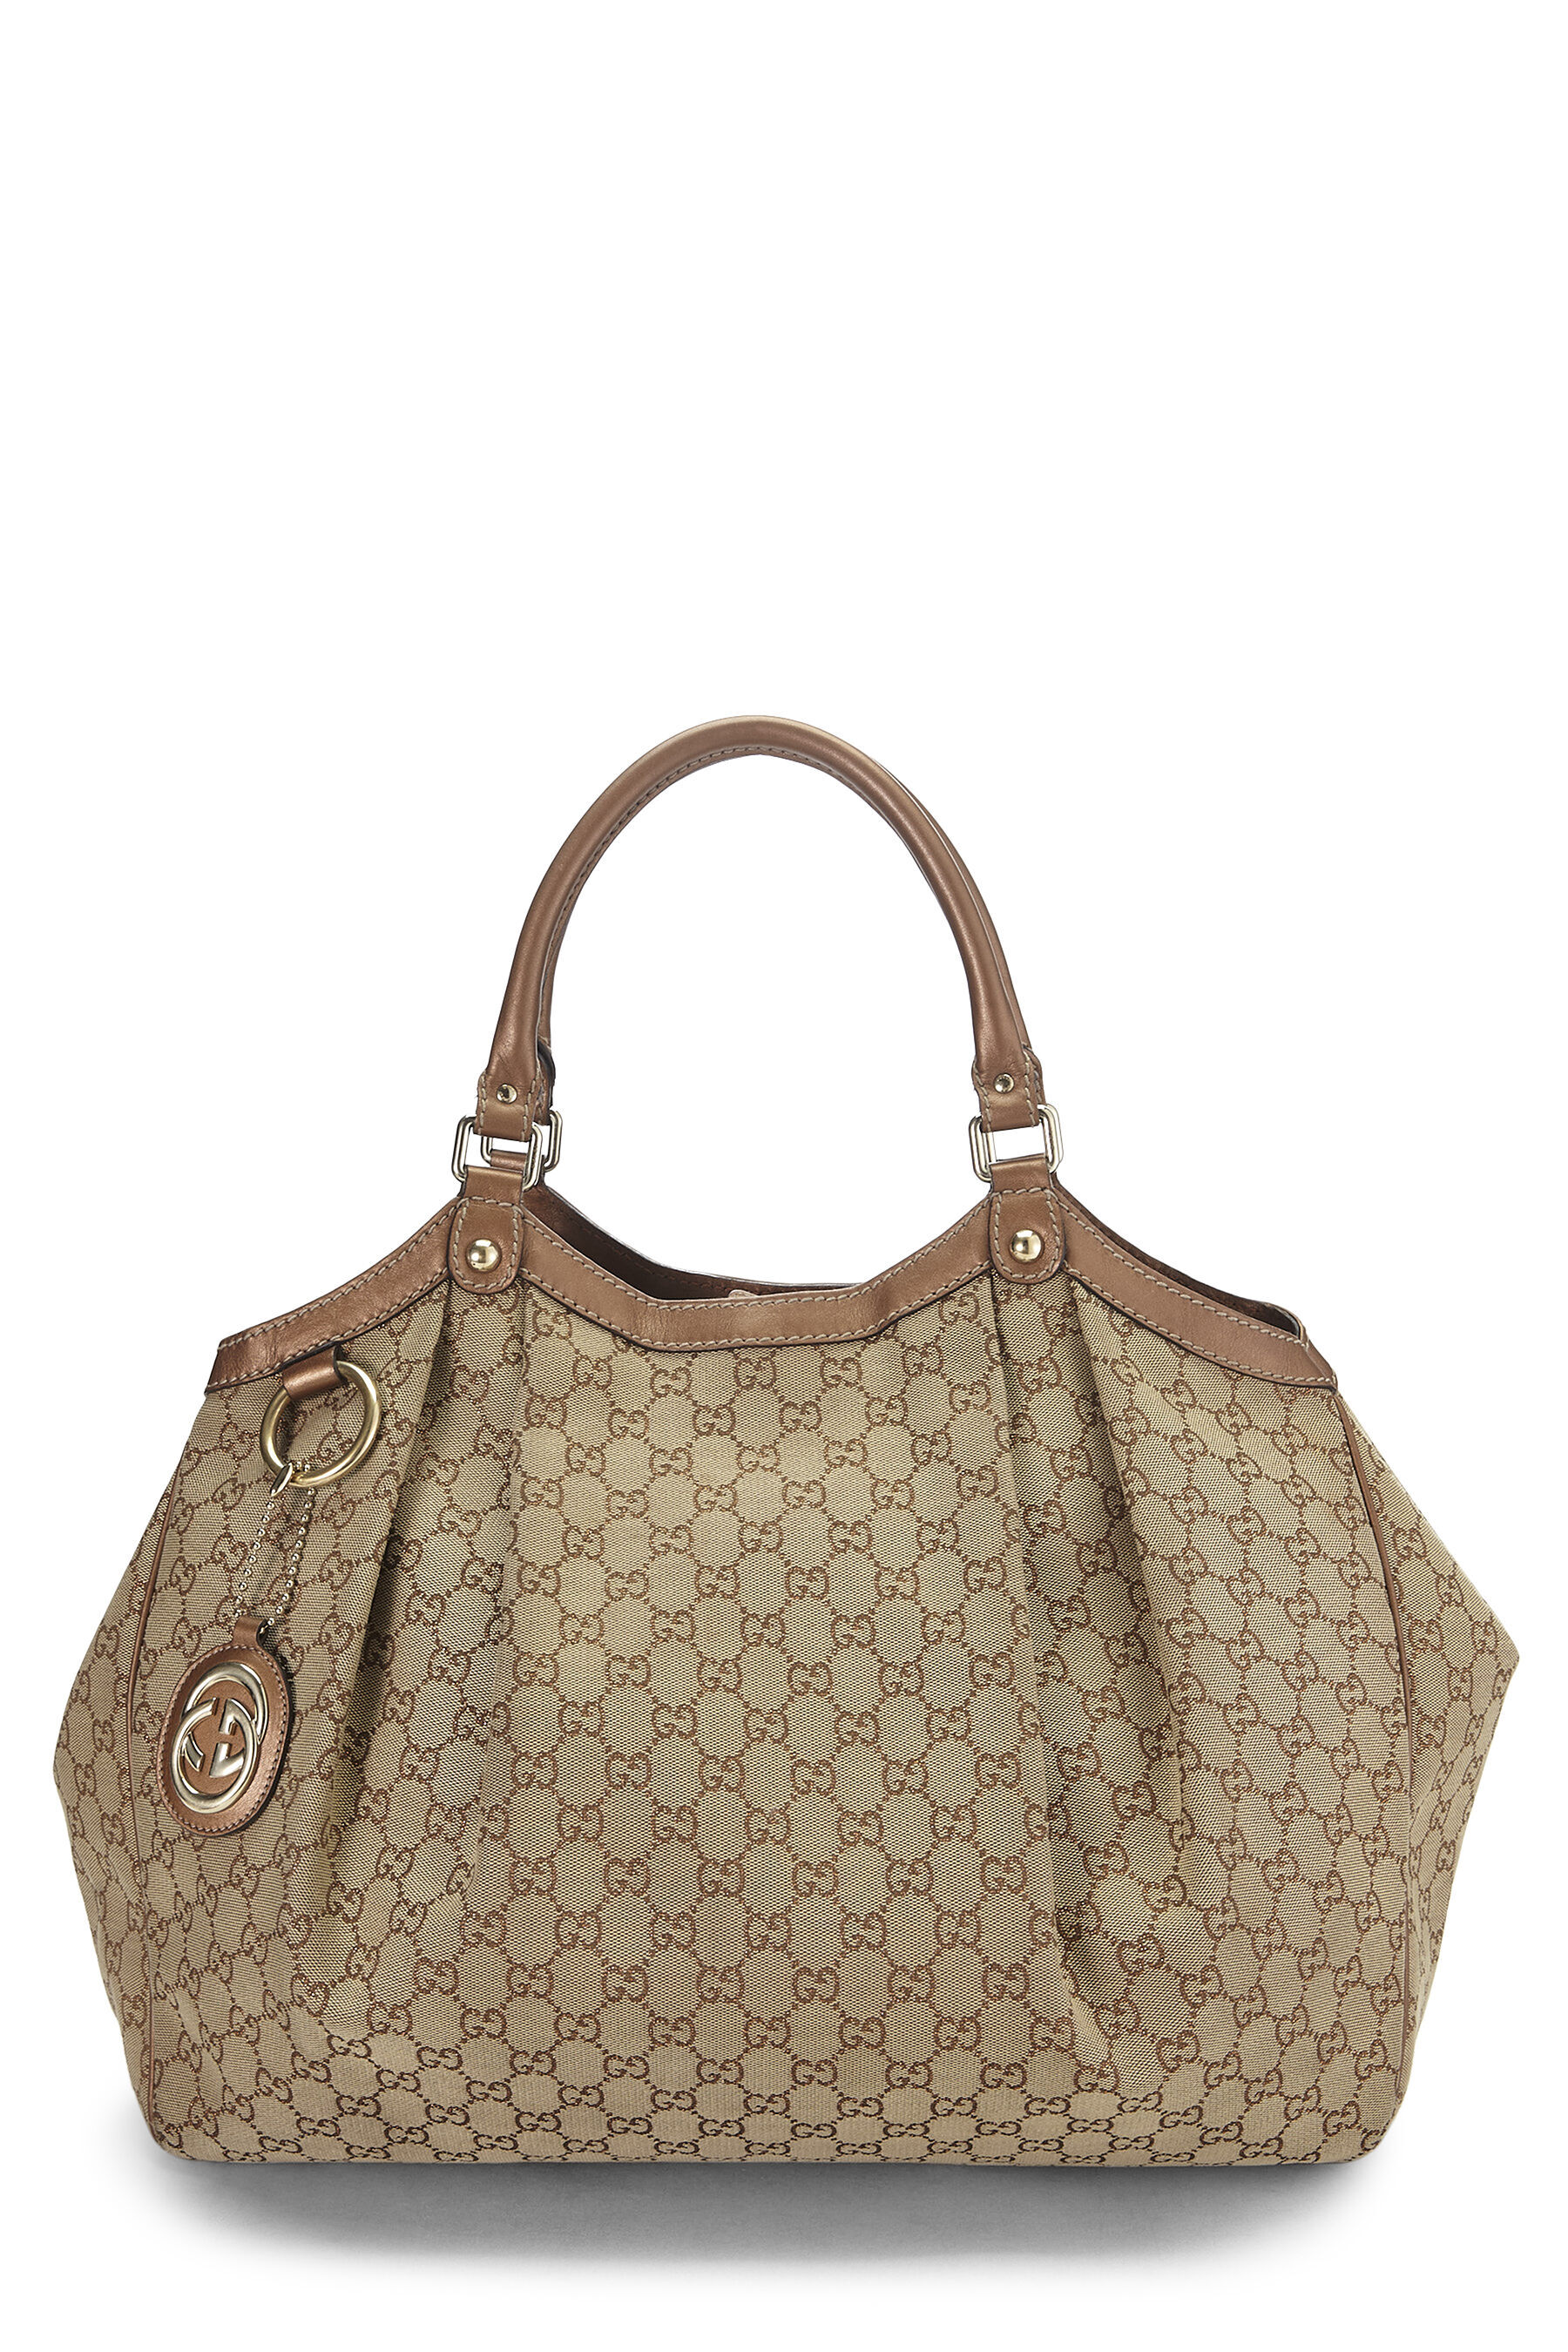 At Auction: GUCCI, GUCCI - Bamboo Gucci Handbag.